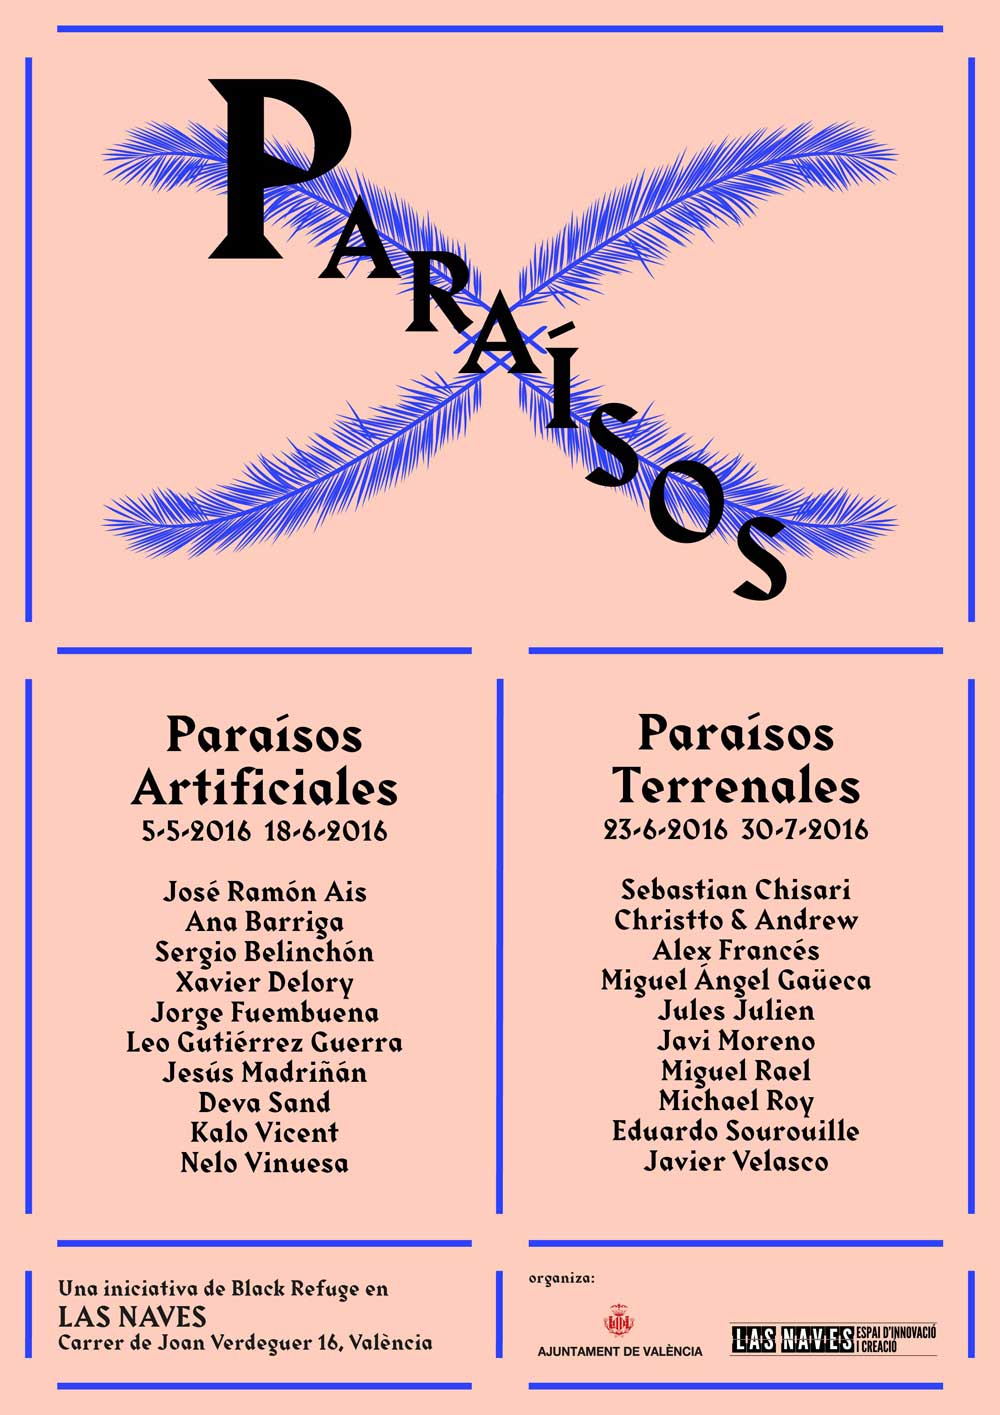 Paraisos_Cartel_A4